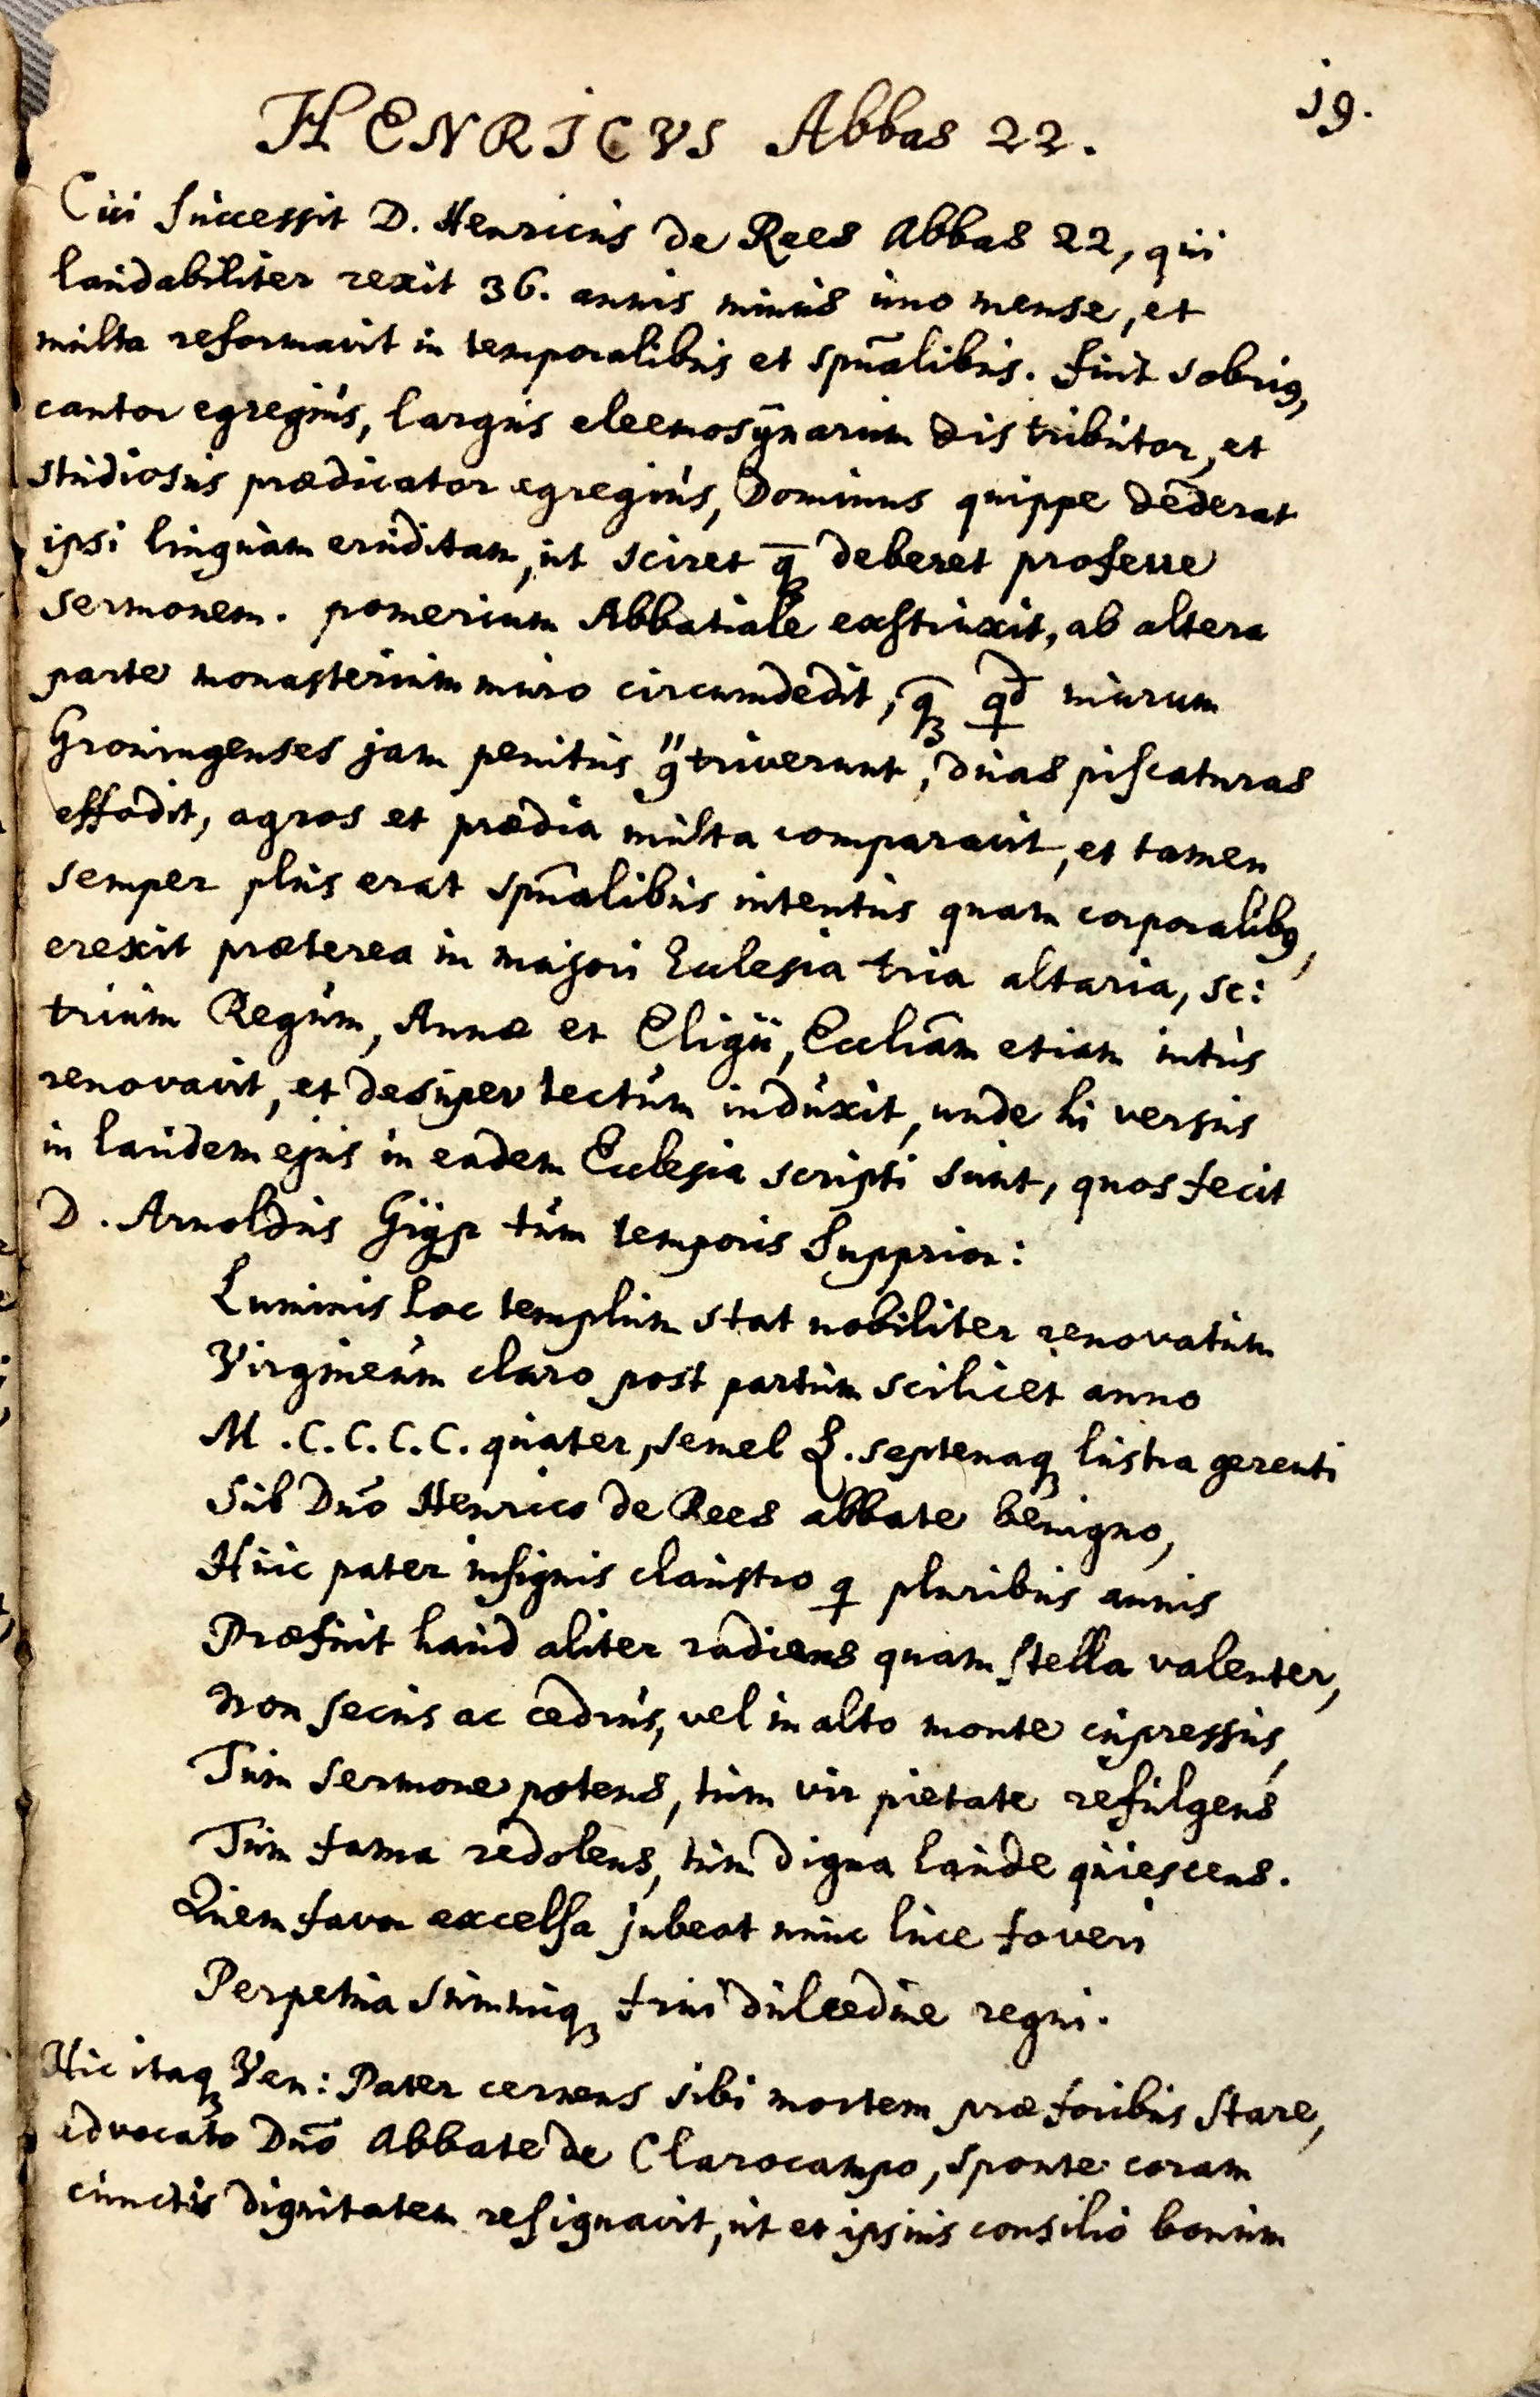 Kroniek van de abten van Aduard, geschreven begin 17e eeuw. UBG uklu hs. 136, fol. 39: “Hendrik (van Rees) Abt 22.”